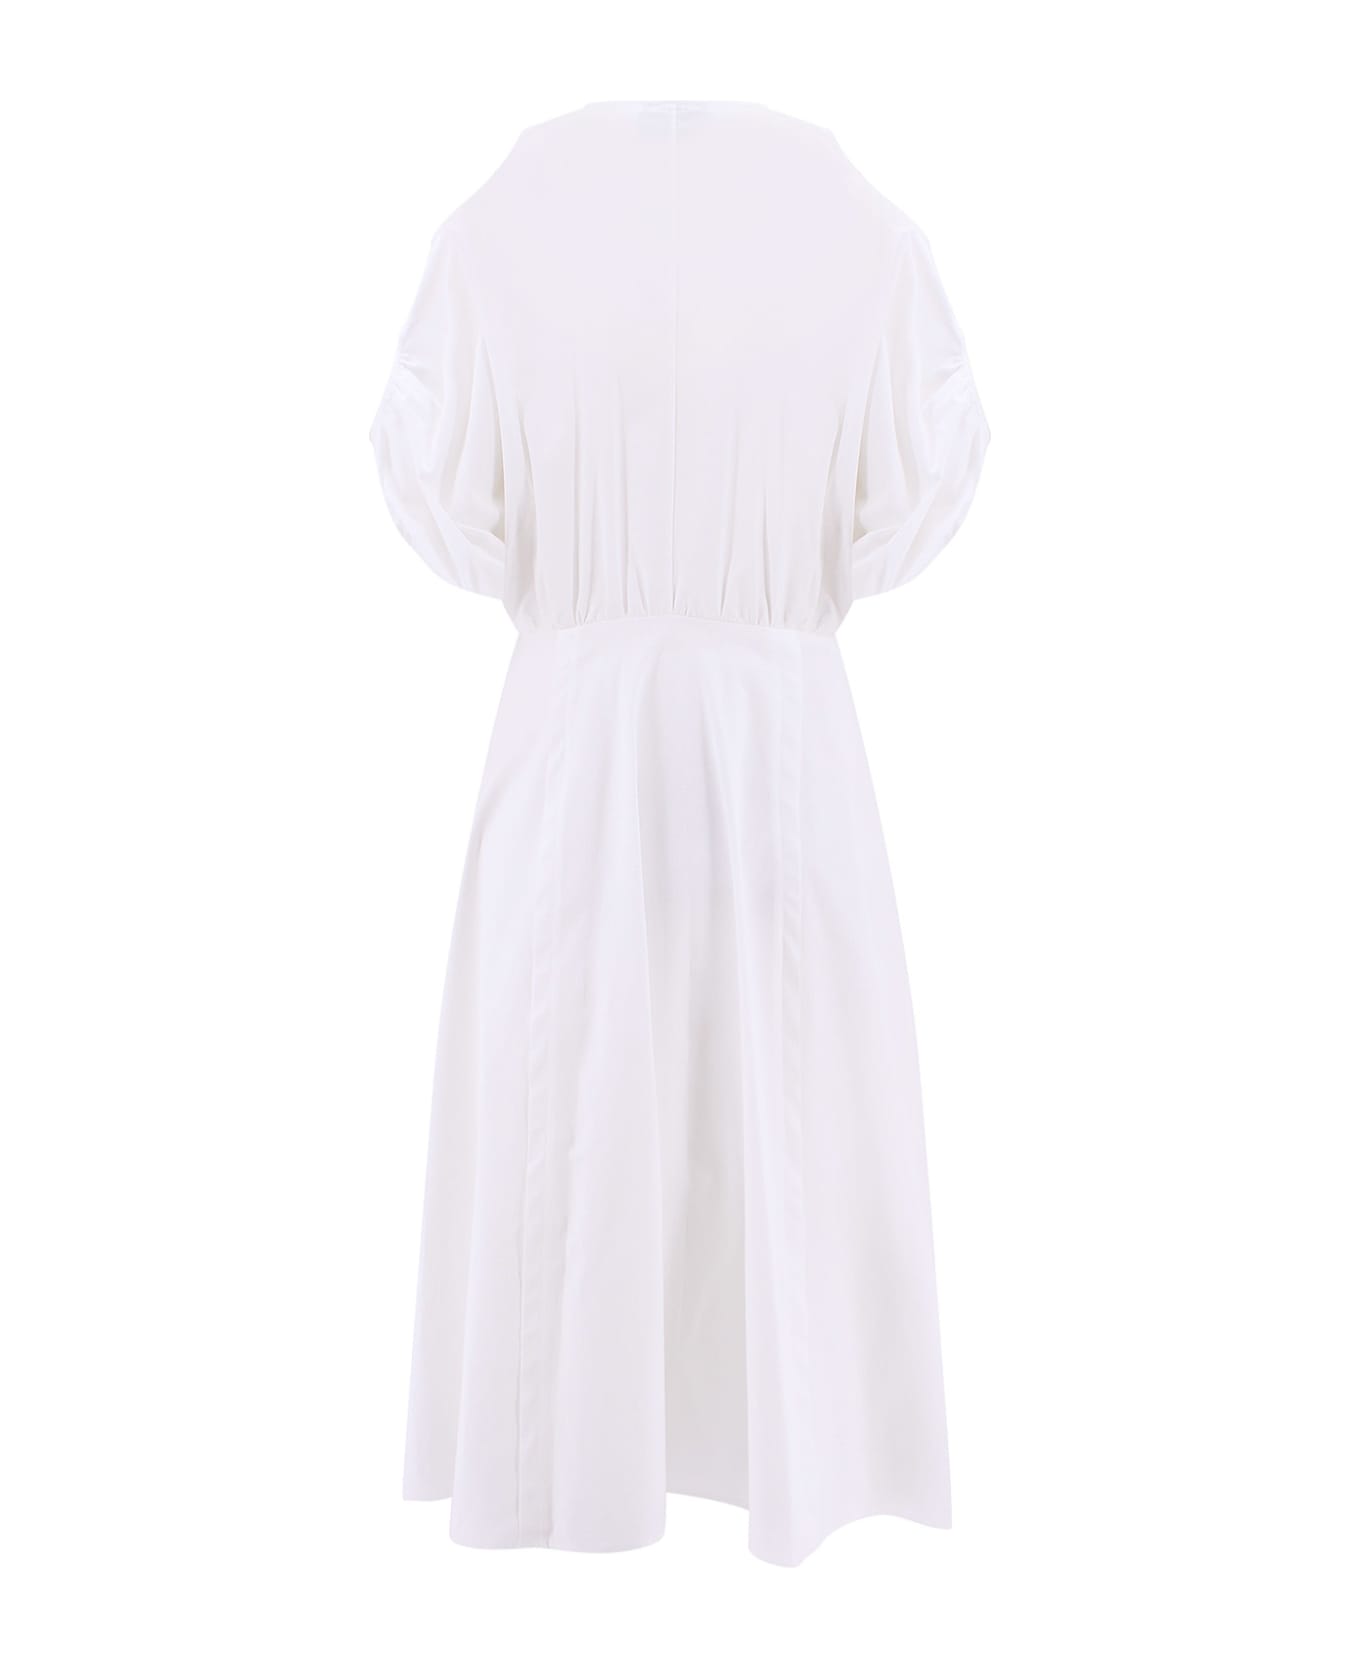 Vivetta Dress - White ワンピース＆ドレス